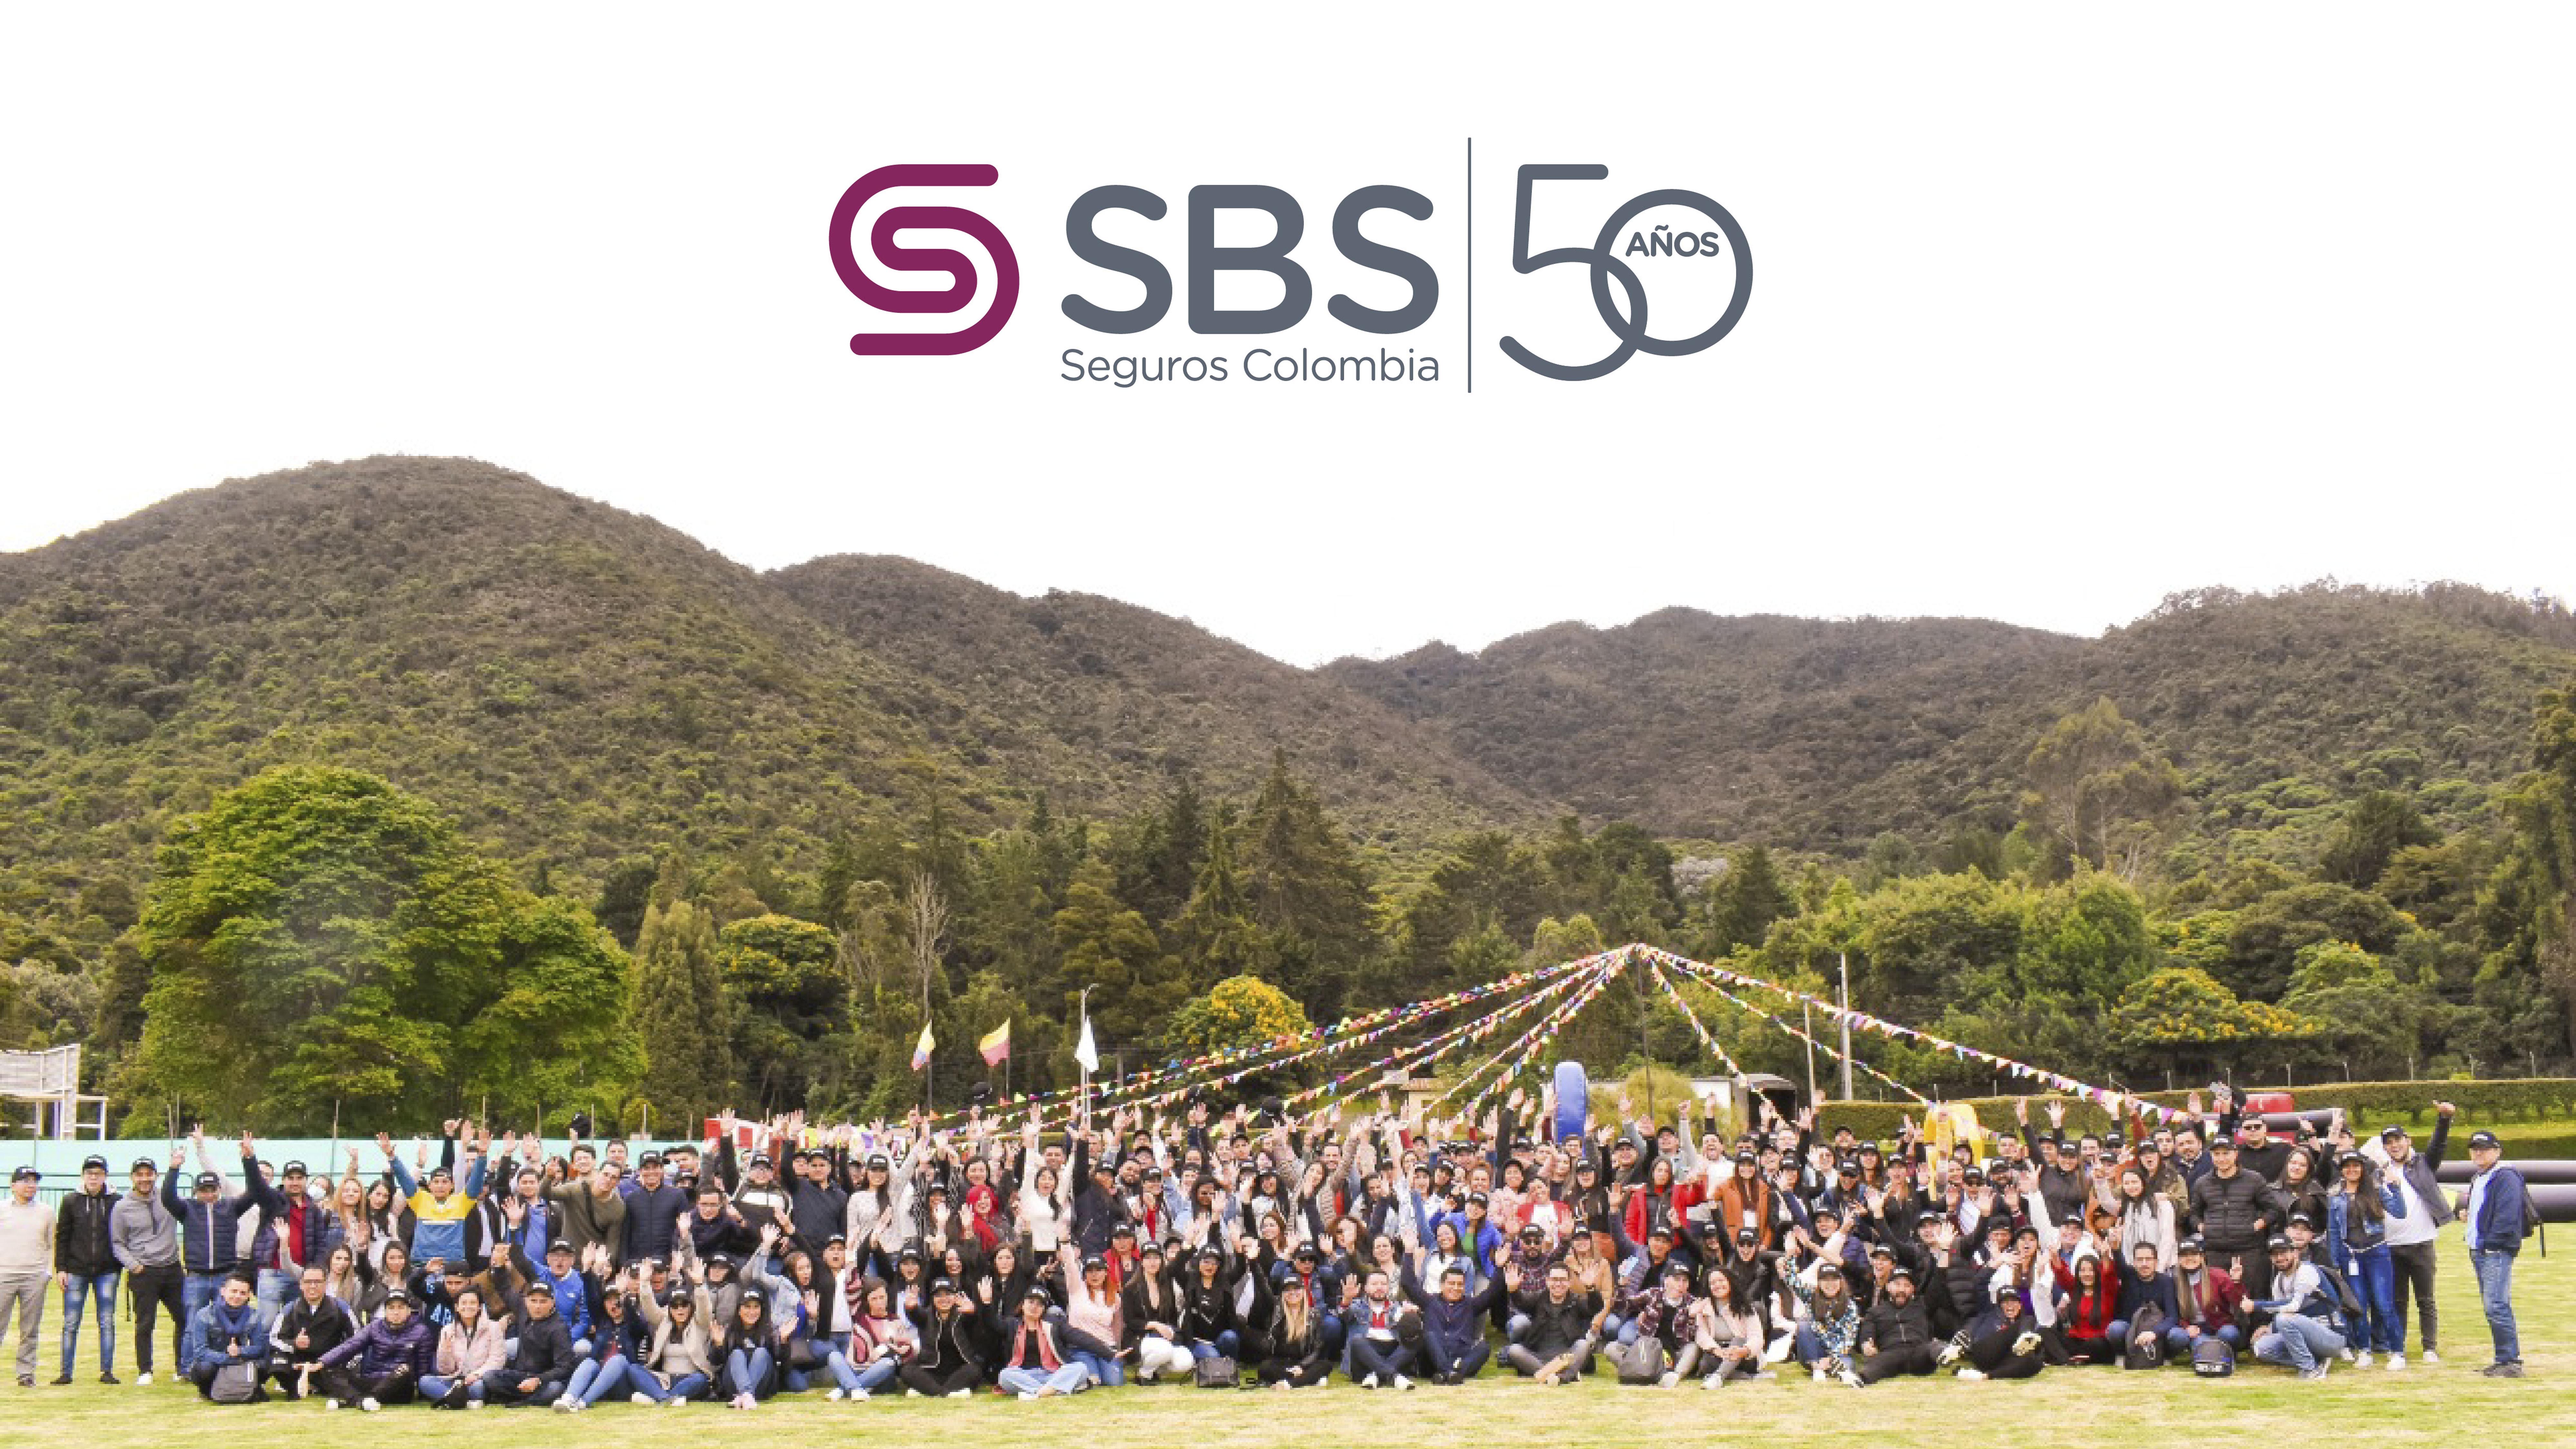 SBS Seguros Colombia S.A.